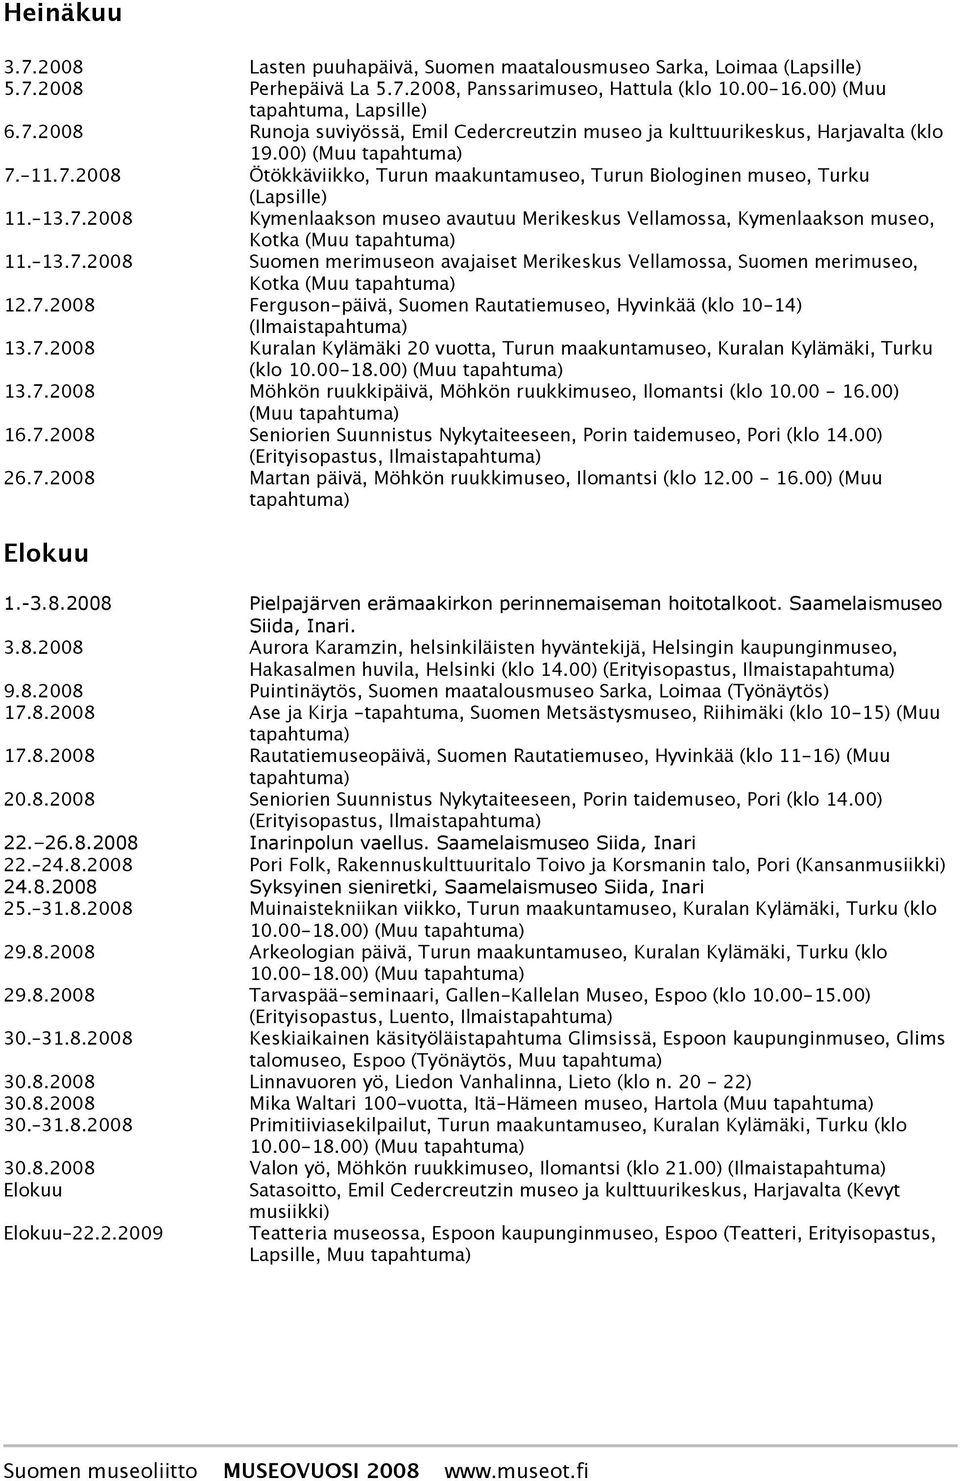 7.2008 Ferguson-päivä, Suomen Rautatiemuseo, Hyvinkää (klo 10-14) (Ilmais 13.7.2008 Kuralan Kylämäki 20 vuotta, Turun maakuntamuseo, Kuralan Kylämäki, Turku (klo 10.00-18.00) (Muu 13.7.2008 Möhkön ruukkipäivä, Möhkön ruukkimuseo, Ilomantsi (klo 10.